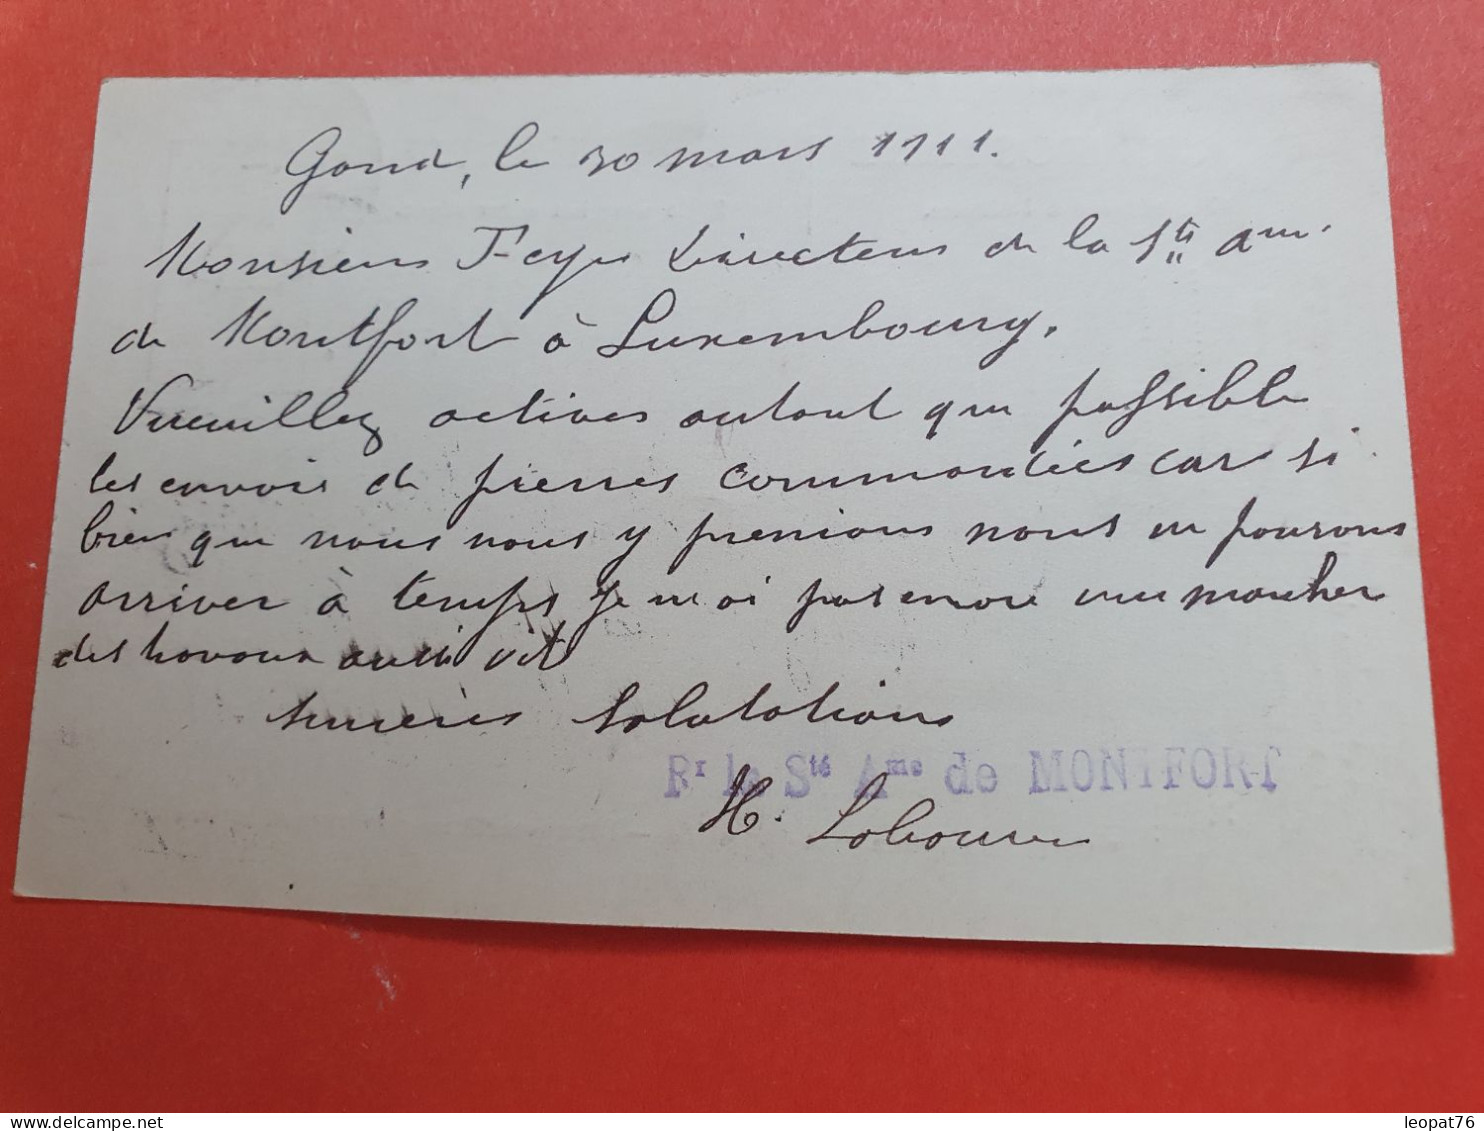 Belgique - Entier Postal De Gand Pour Le Luxembourg En 1911 - Réf 1047 - Cartes Postales 1909-1934